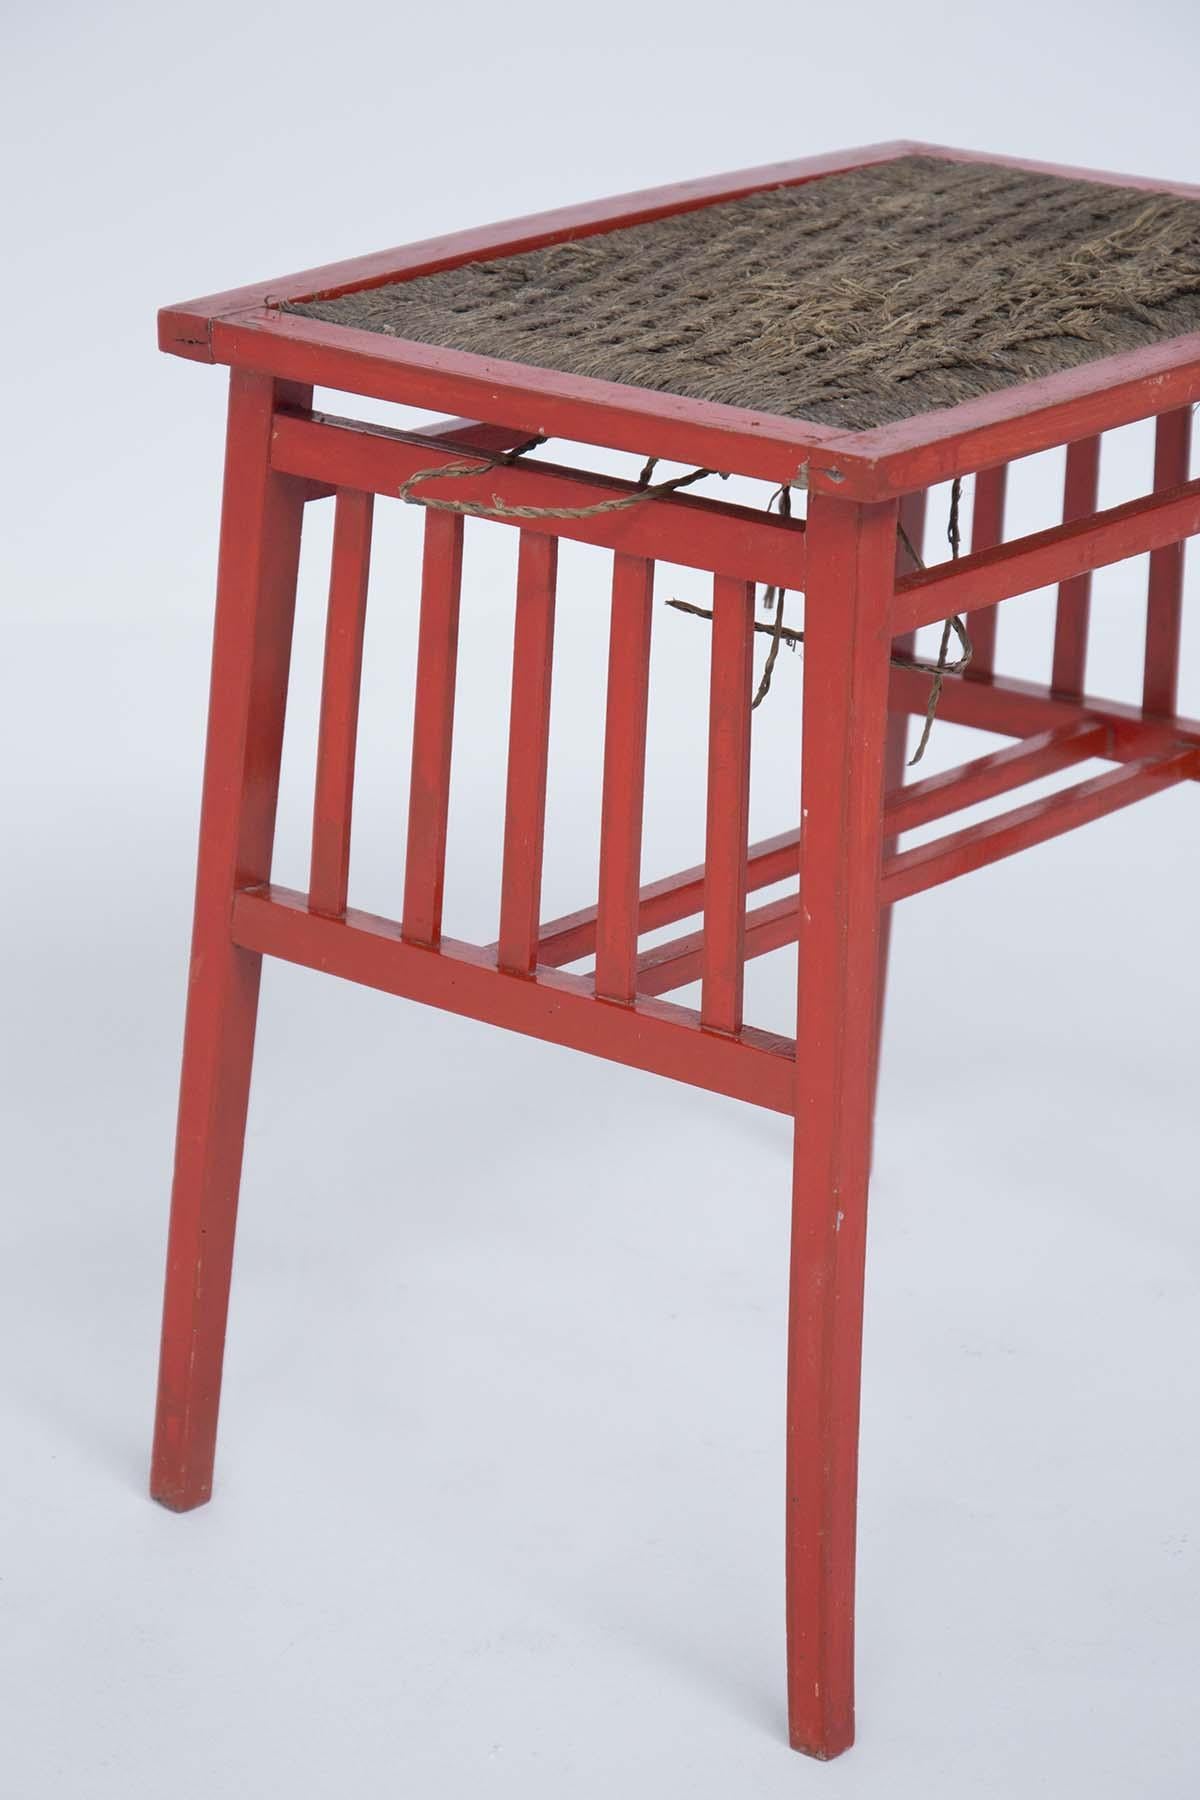 Couchtisch aus Holz, bemalt im Stil von Ettore Sottsass, entworfen in den 1950er Jahren. 
Der Rahmen besteht aus rot lackiertem Holz und hat vier Beine. Das Oberteil ist aus geflochtenem Seil gefertigt. Der Sitz ist mit einer Reihe von fünf